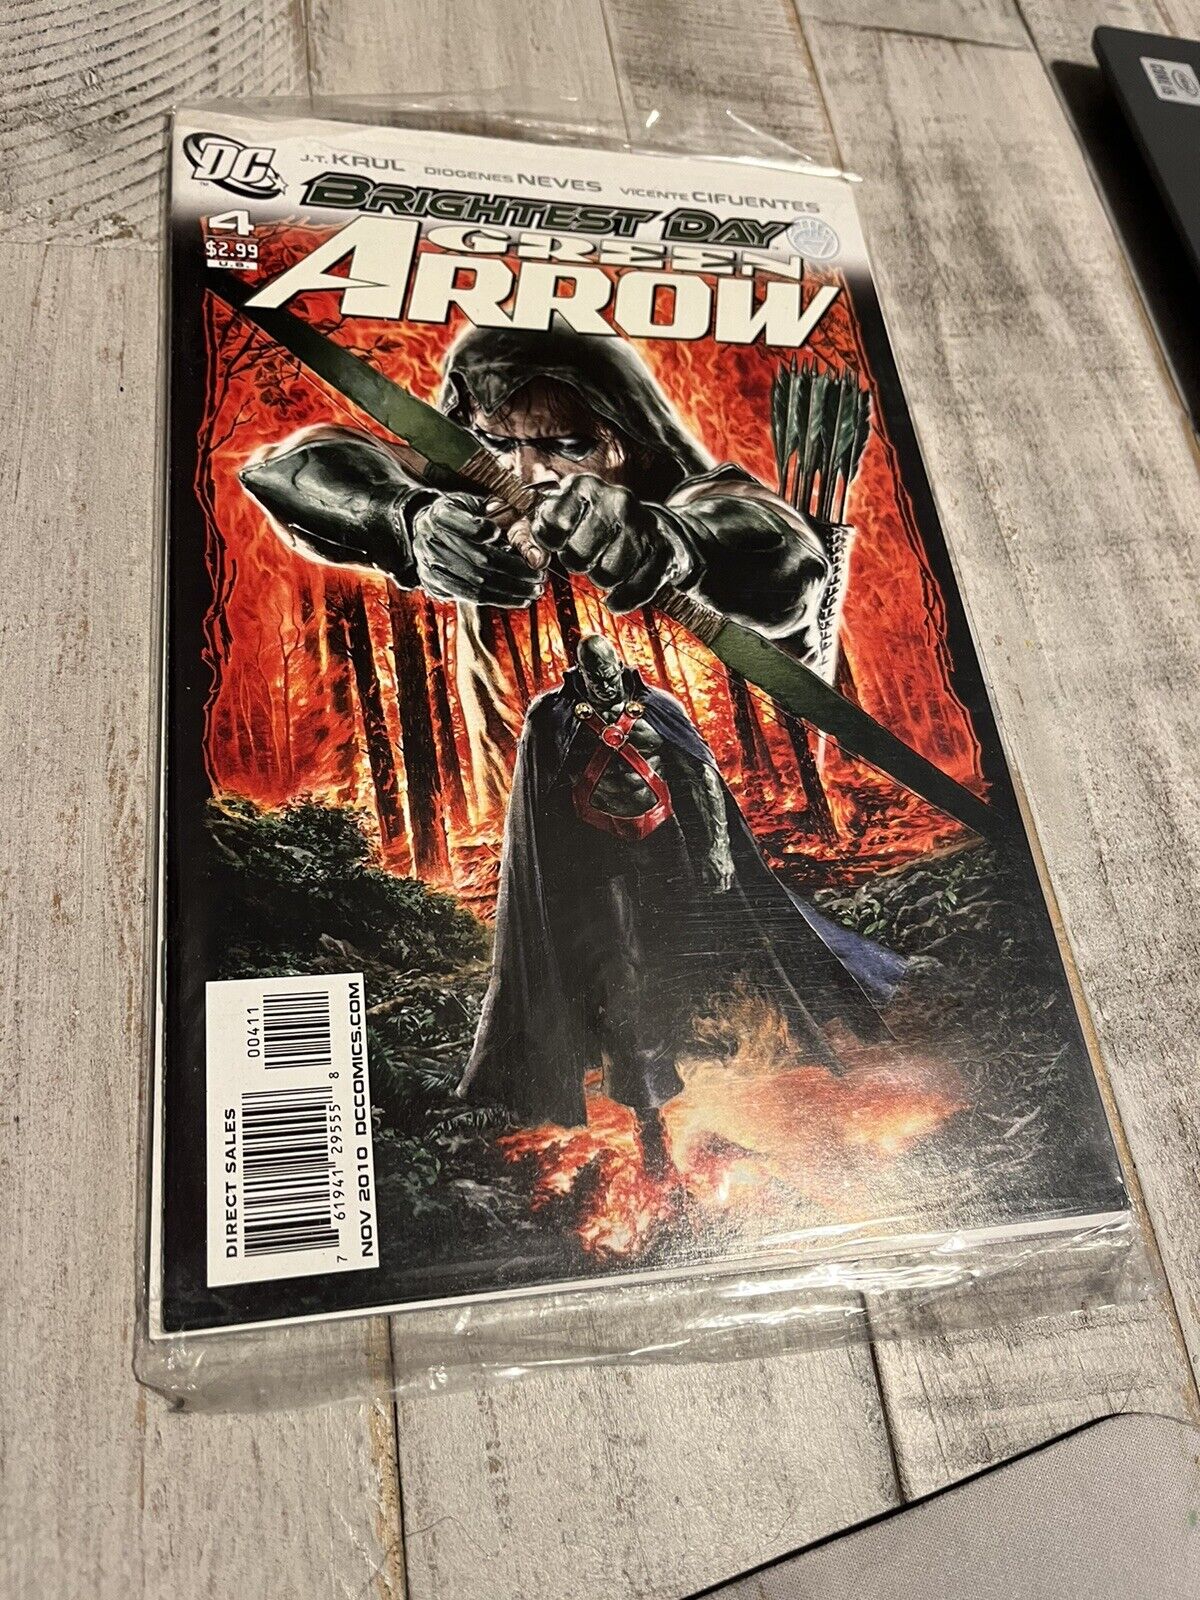 Green Arrow #4 (DC Comics, November 2010)